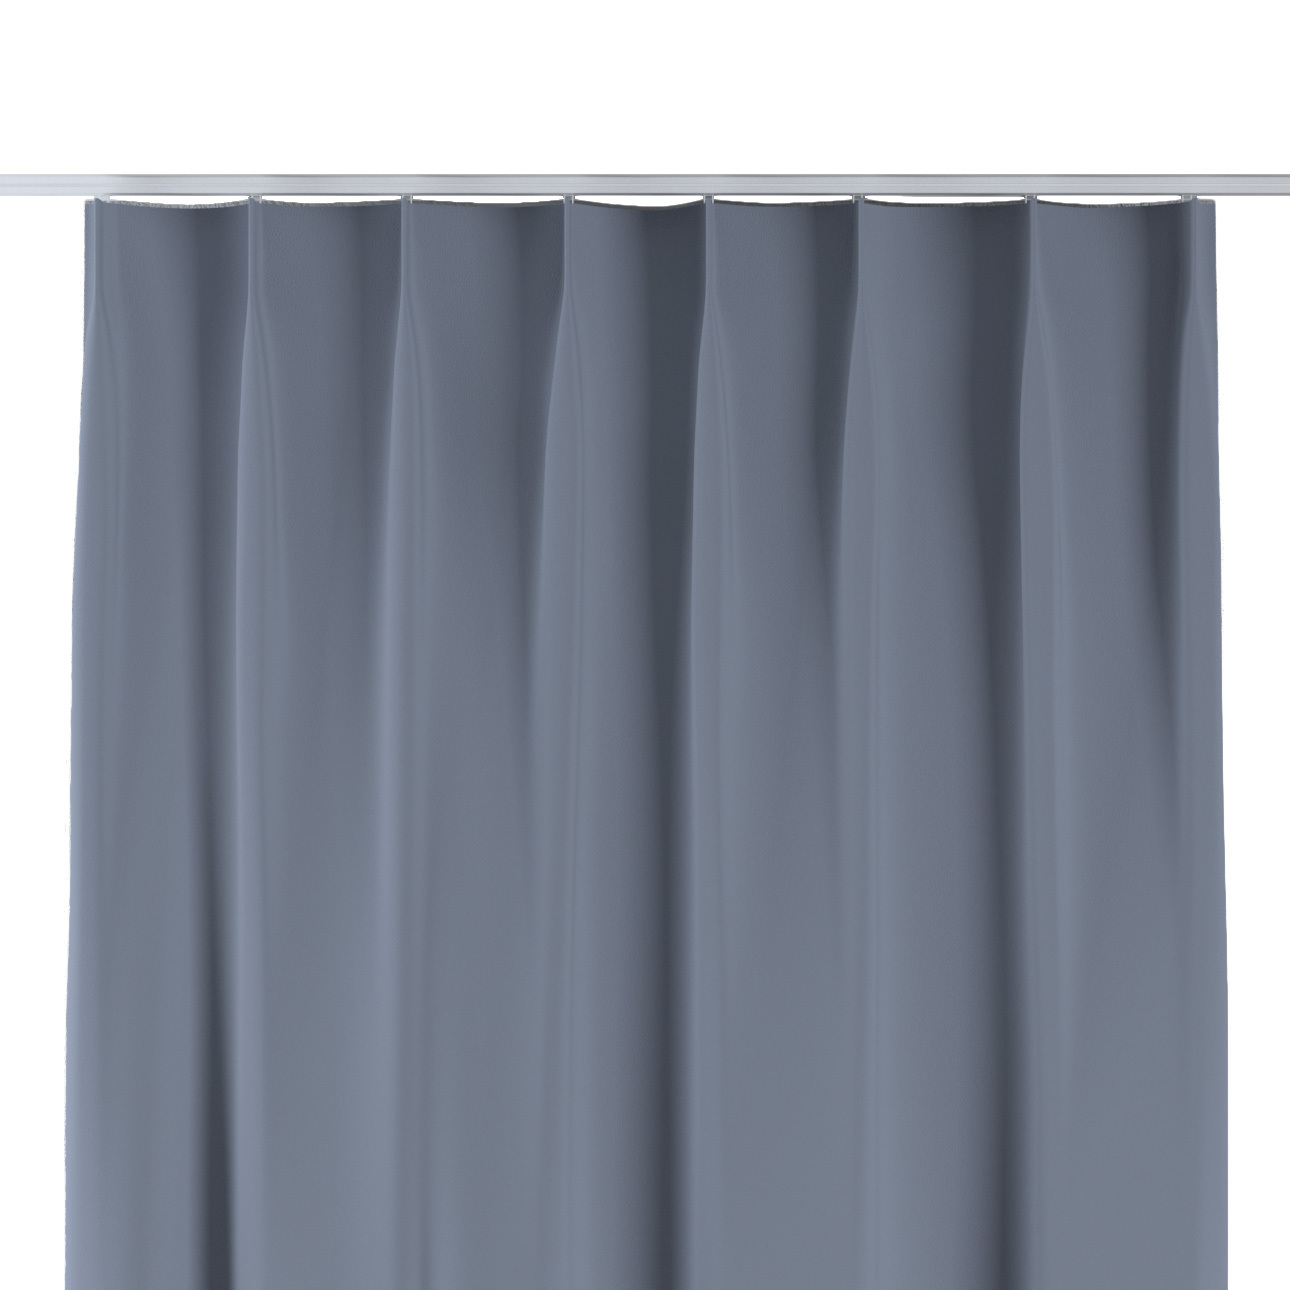 Vorhang mit flämischen 1-er Falten, dunkelgrau, Blackout 300 cm (269-41) günstig online kaufen